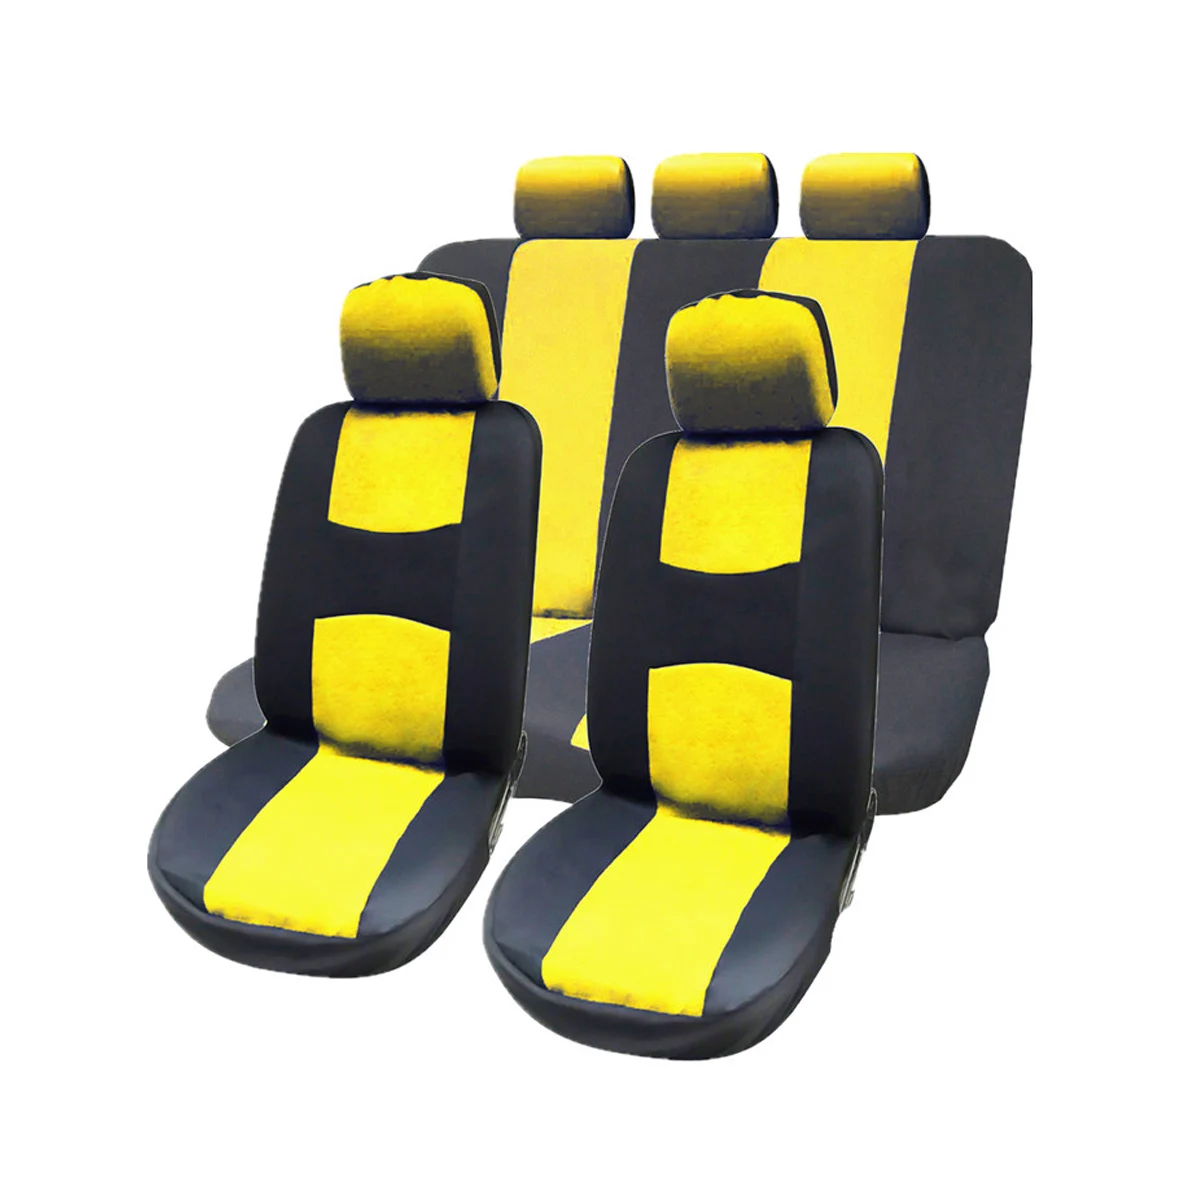 9 шт. полный набор чехлов для автомобильных сидений со съемными подголовниками универсальные чехлы для салонов(желтые